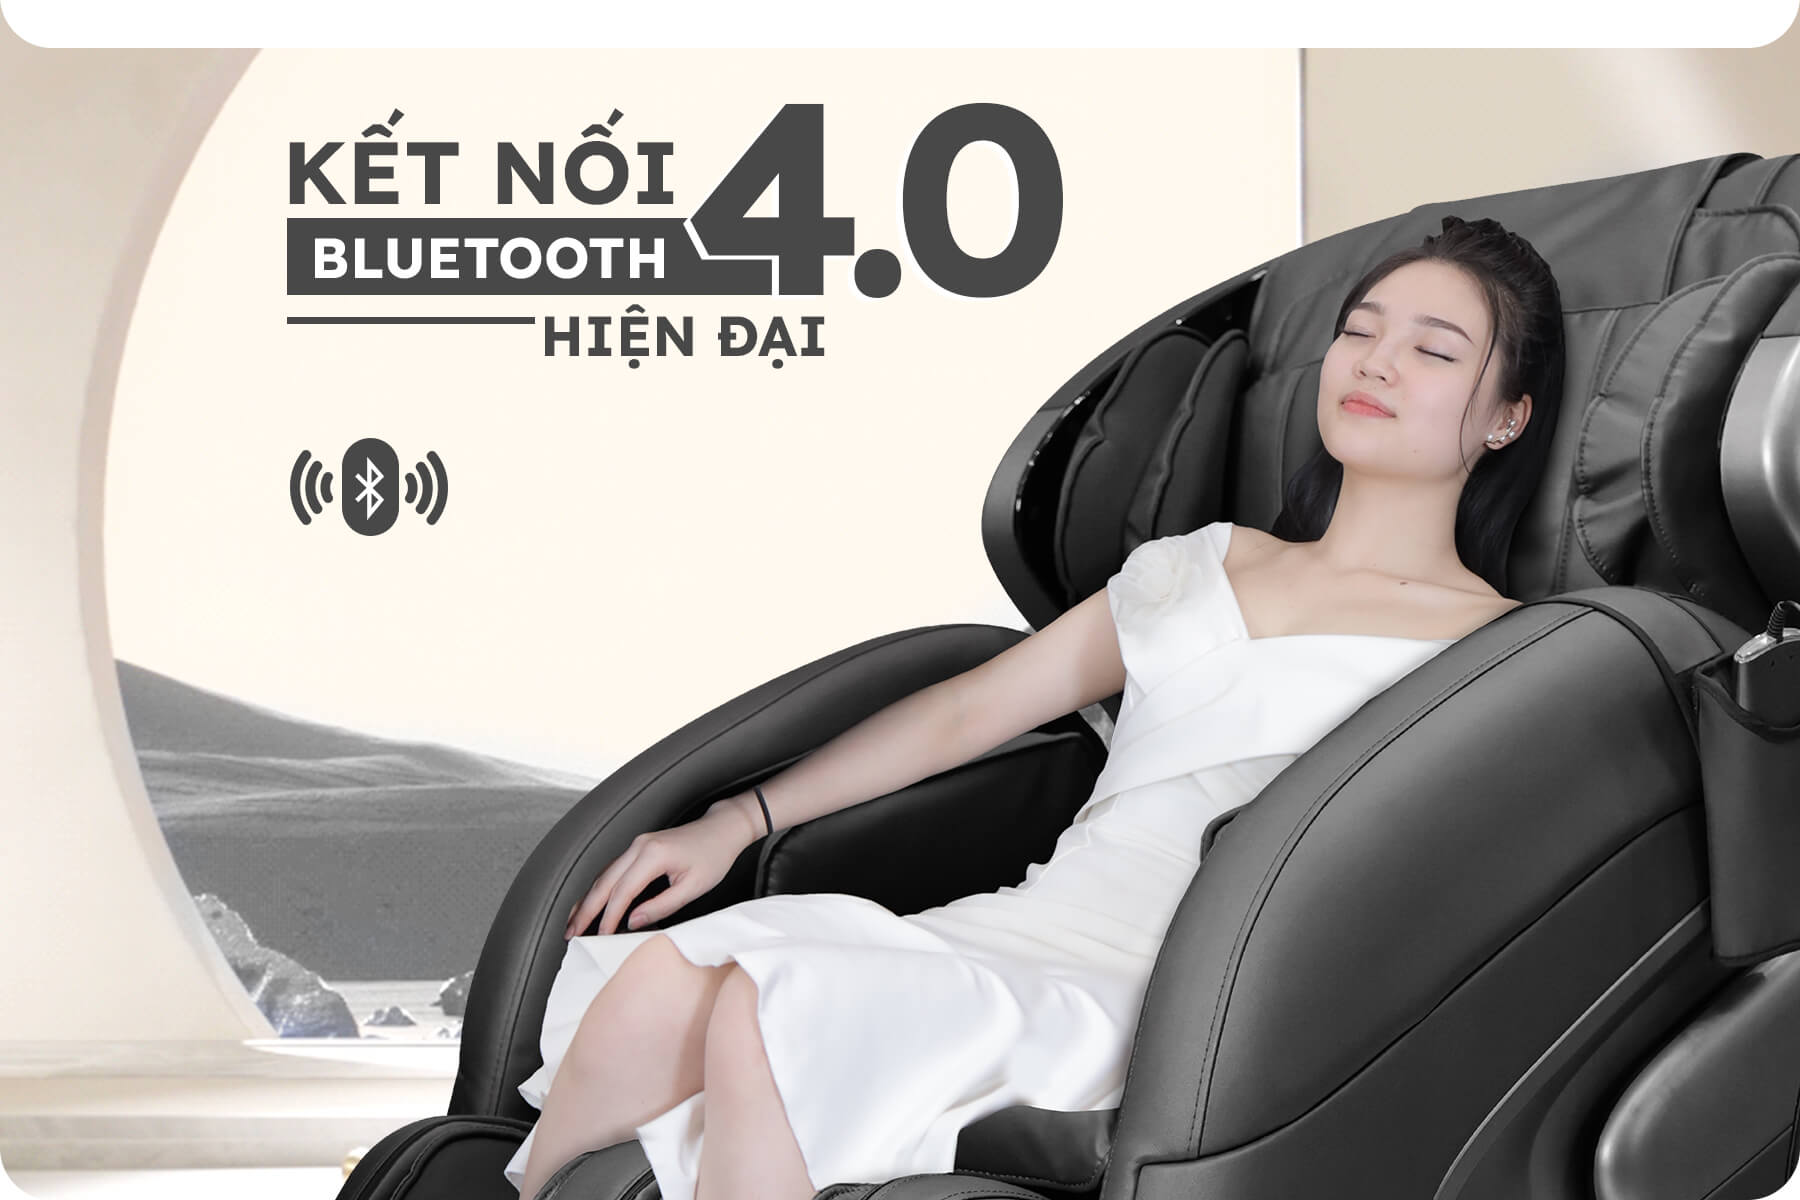 Bluetooth 4.0 thế hệ mới nhất, ghế massage JP686 cho phép người sử dụng tận hưởng những giờ phút thư giãn trọn vẹn